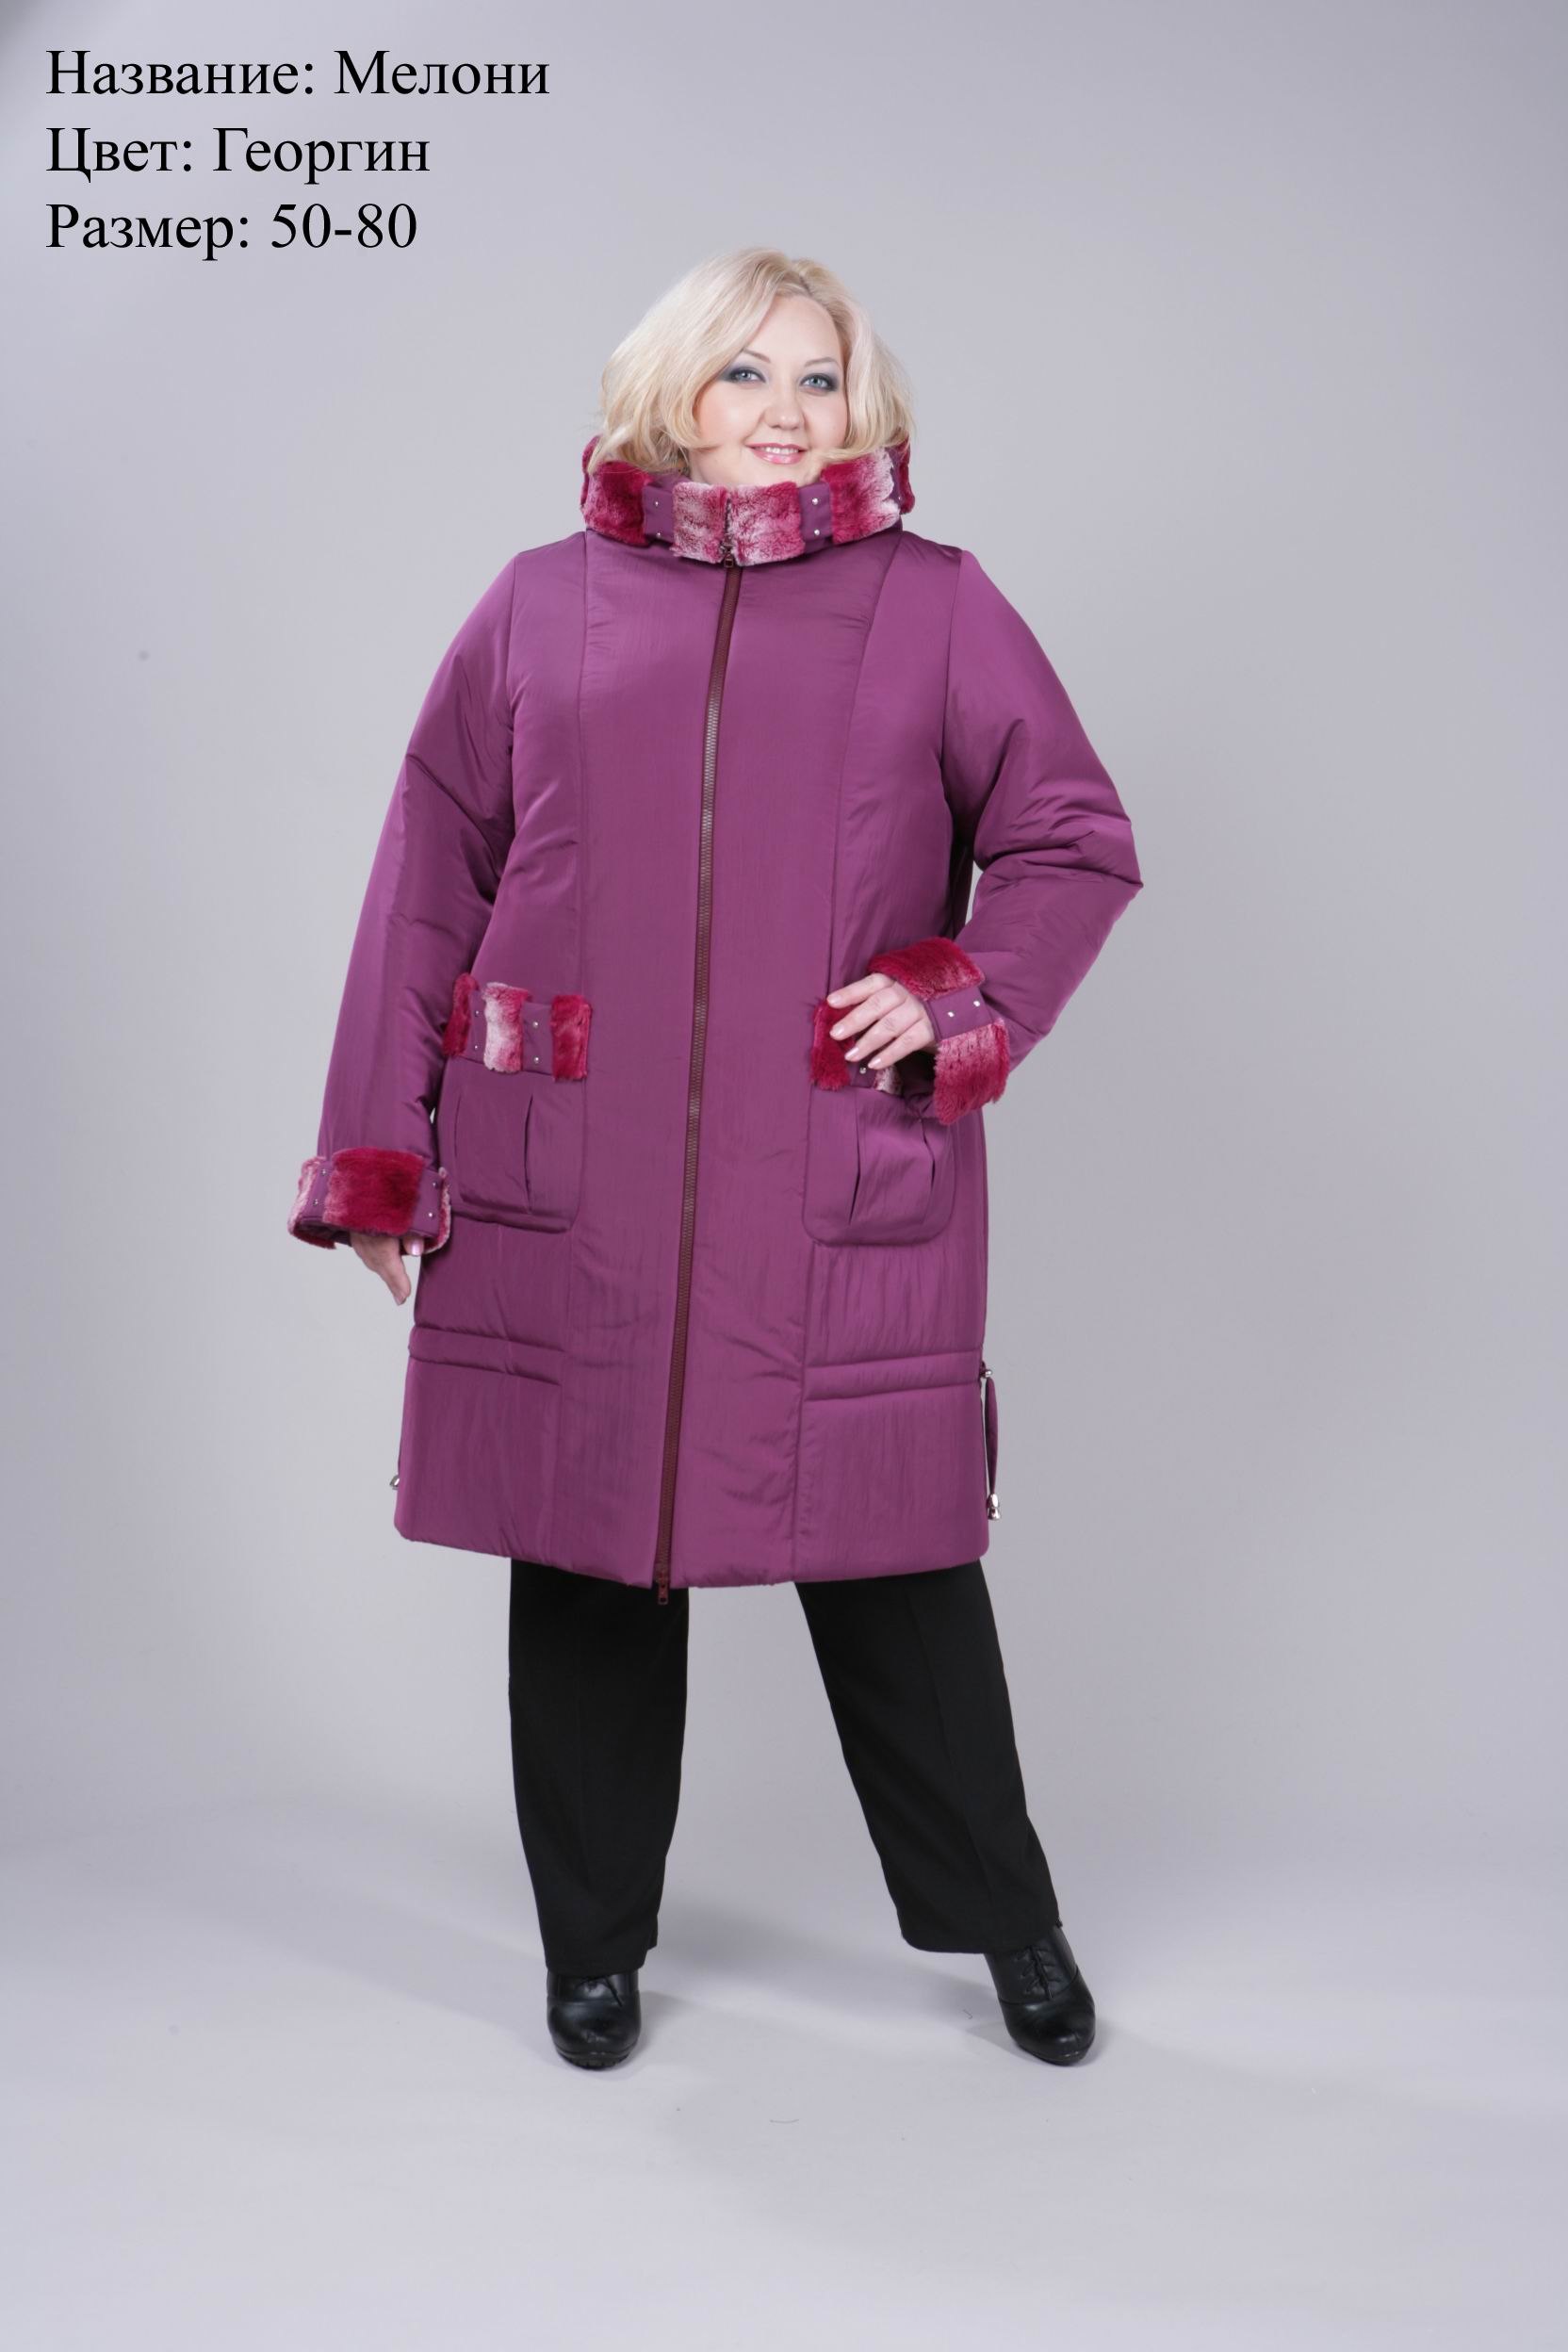 Женский зимнее пальто большого размера купить. Зимняя куртка женская валберис 62 размер. Зимняя куртка женская валберис 60 размер. Пальто валберис 62 размер. Валберис зимнее пальто женское 52-54.